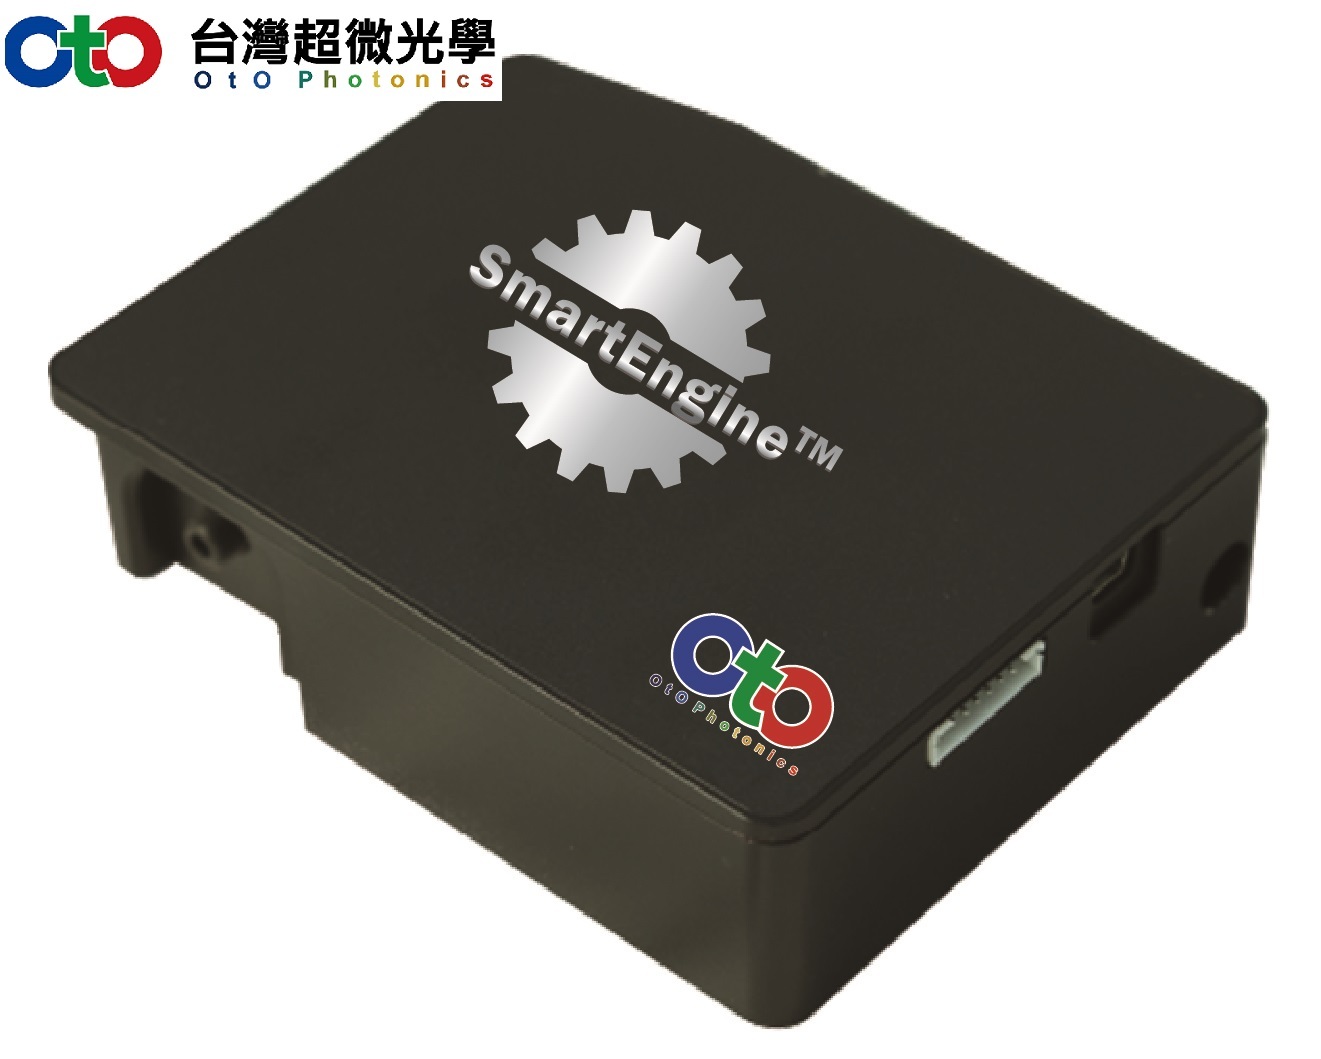 OtO 台湾超微光学 光纤光谱仪--智能引擎7号